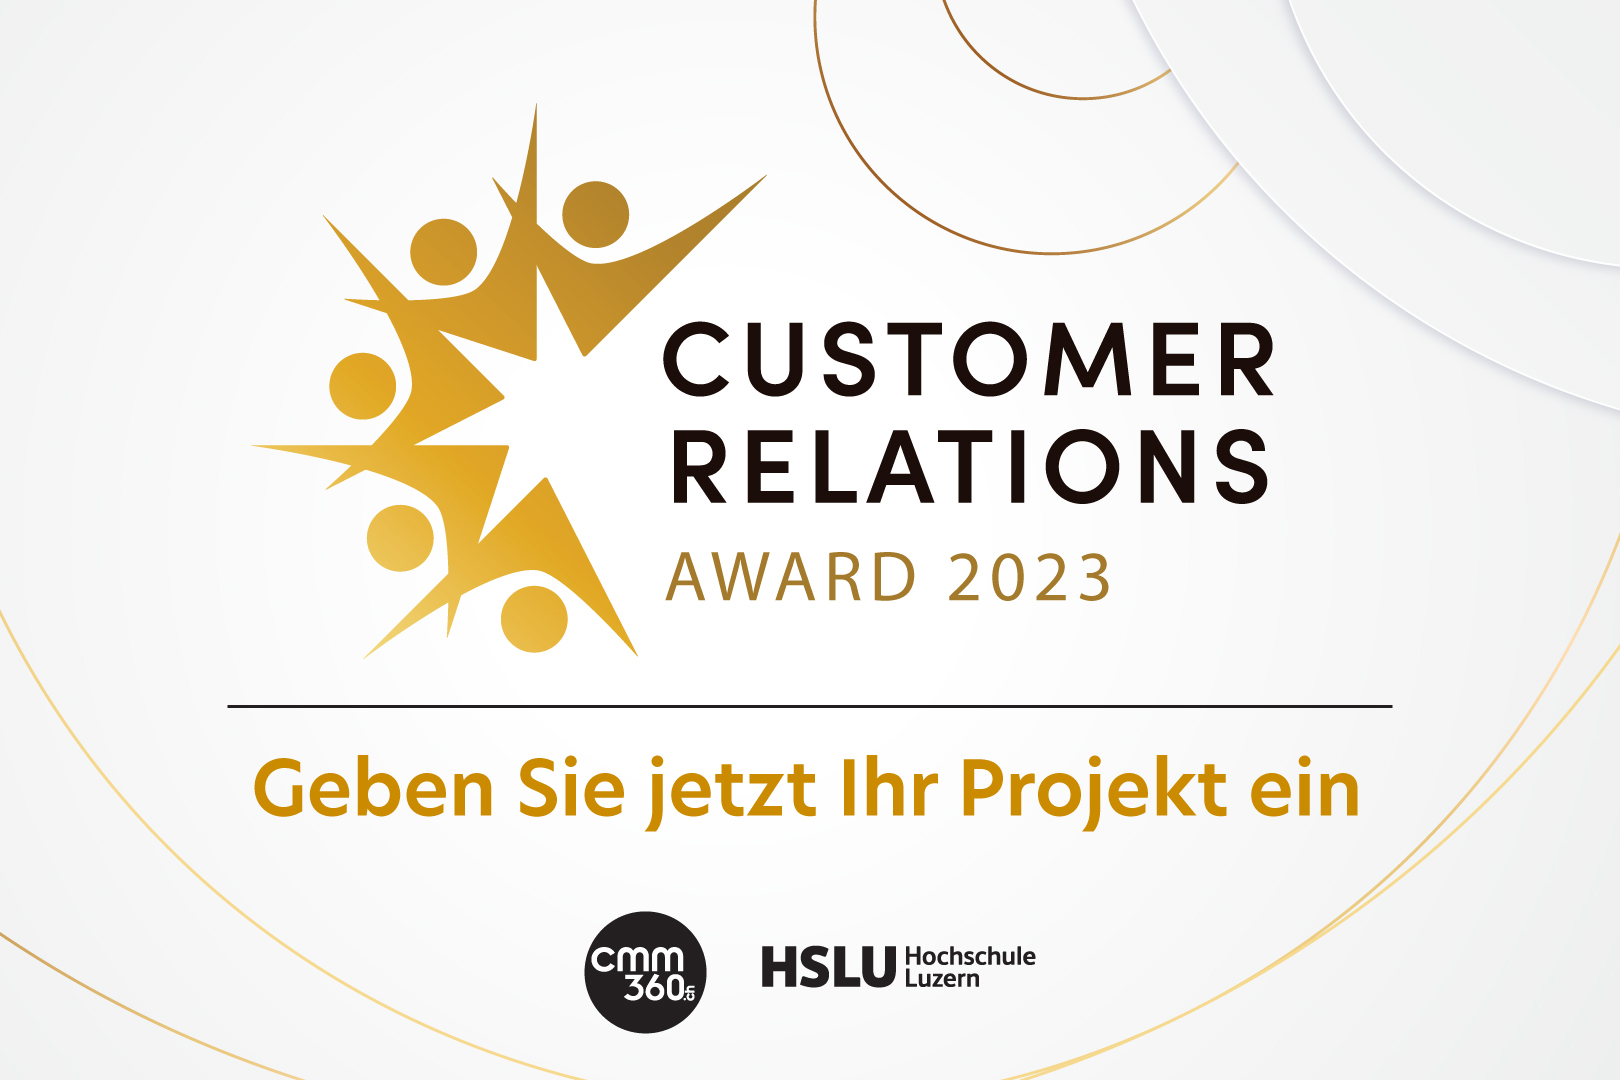 Customer Relations Award 2023: Neue Projekte, neue Chancen und neue Kategorien_cmm360.ch_Bild:www.cmm360.ch